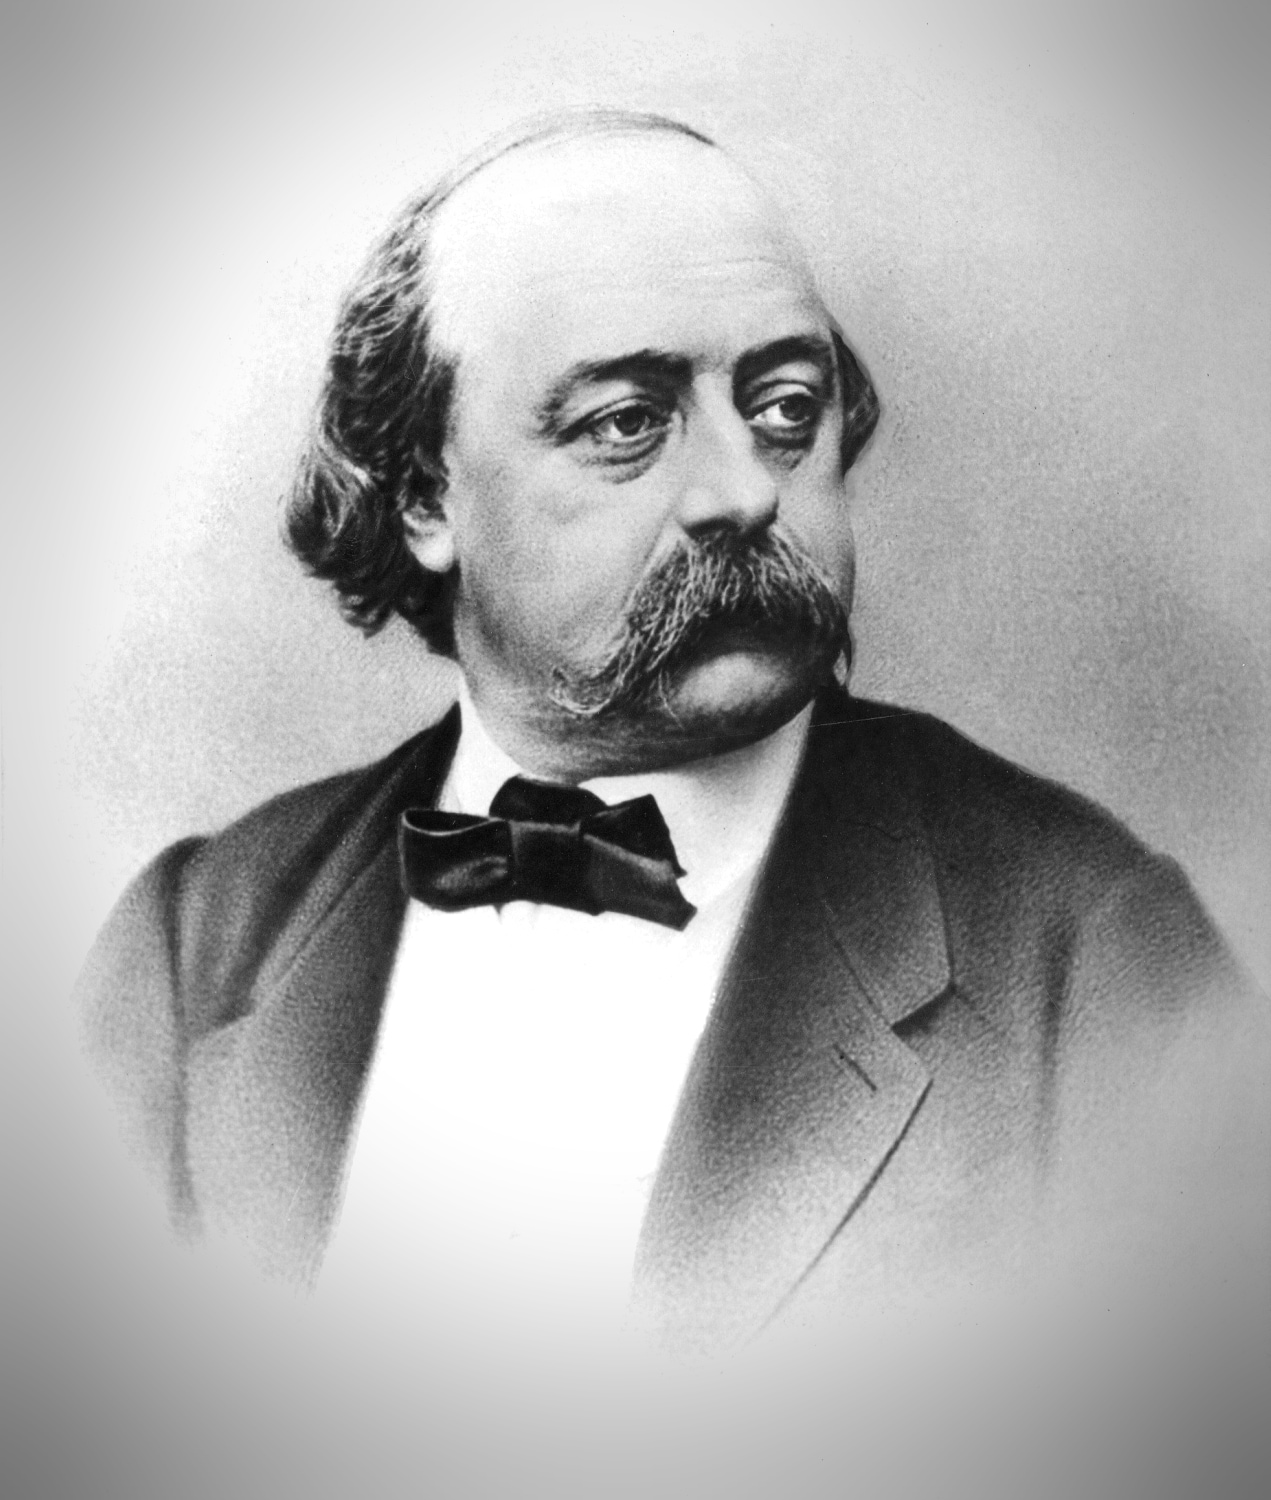 "Monsieur Flaubert non è uno scrittore" - Le Figaro, 1857